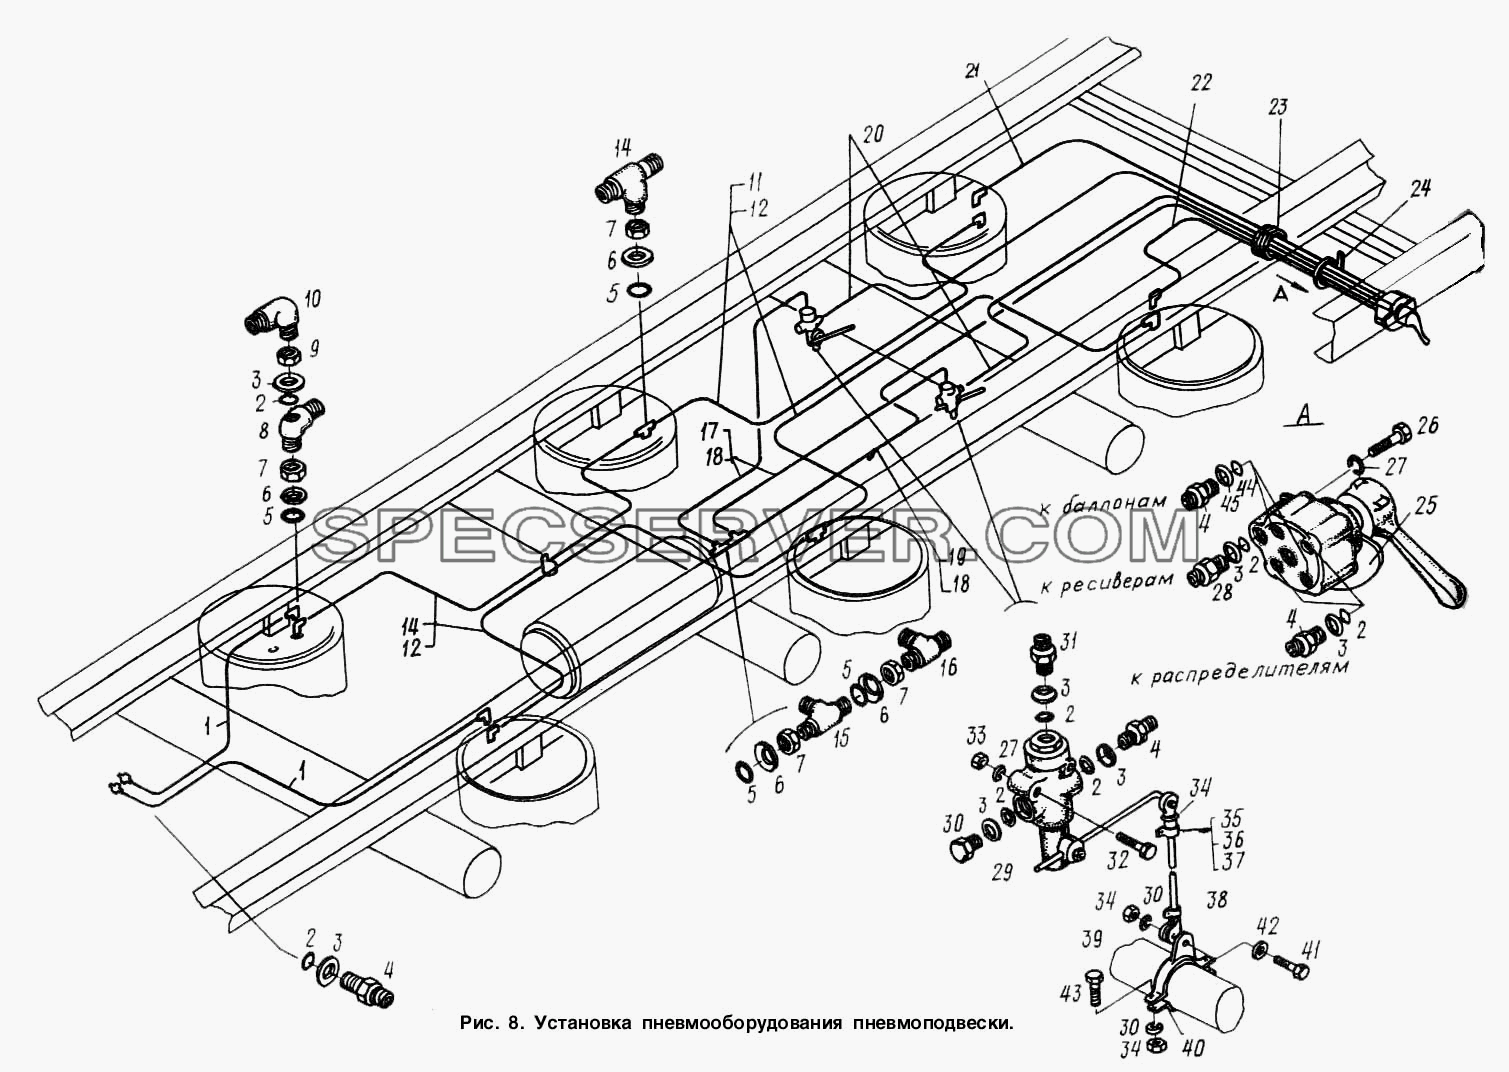 Установка пневмооборудования подвески для МАЗ-9758-30 (список запасных частей)